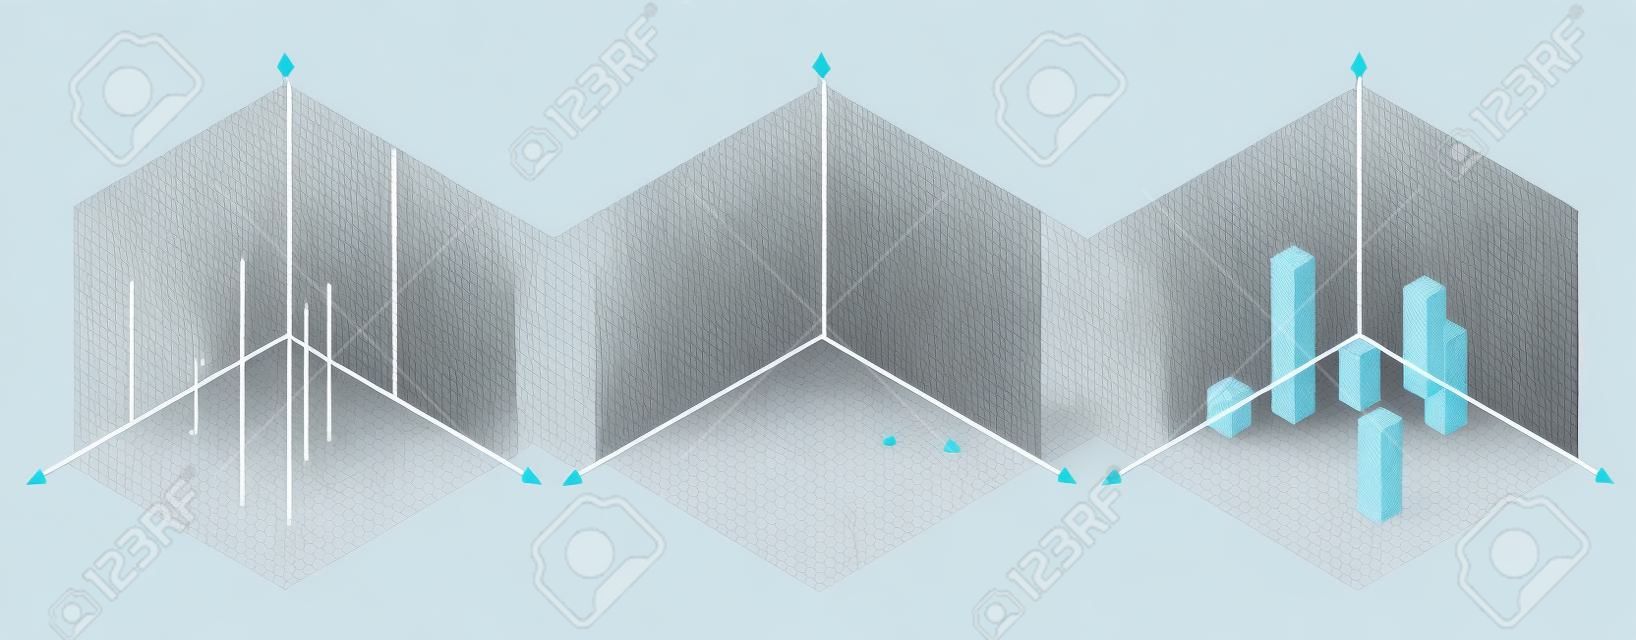 30 등각 투영법이 그 변에 적용됩니다. 반대 큐브입니다. 등각 투영 그리드 벡터